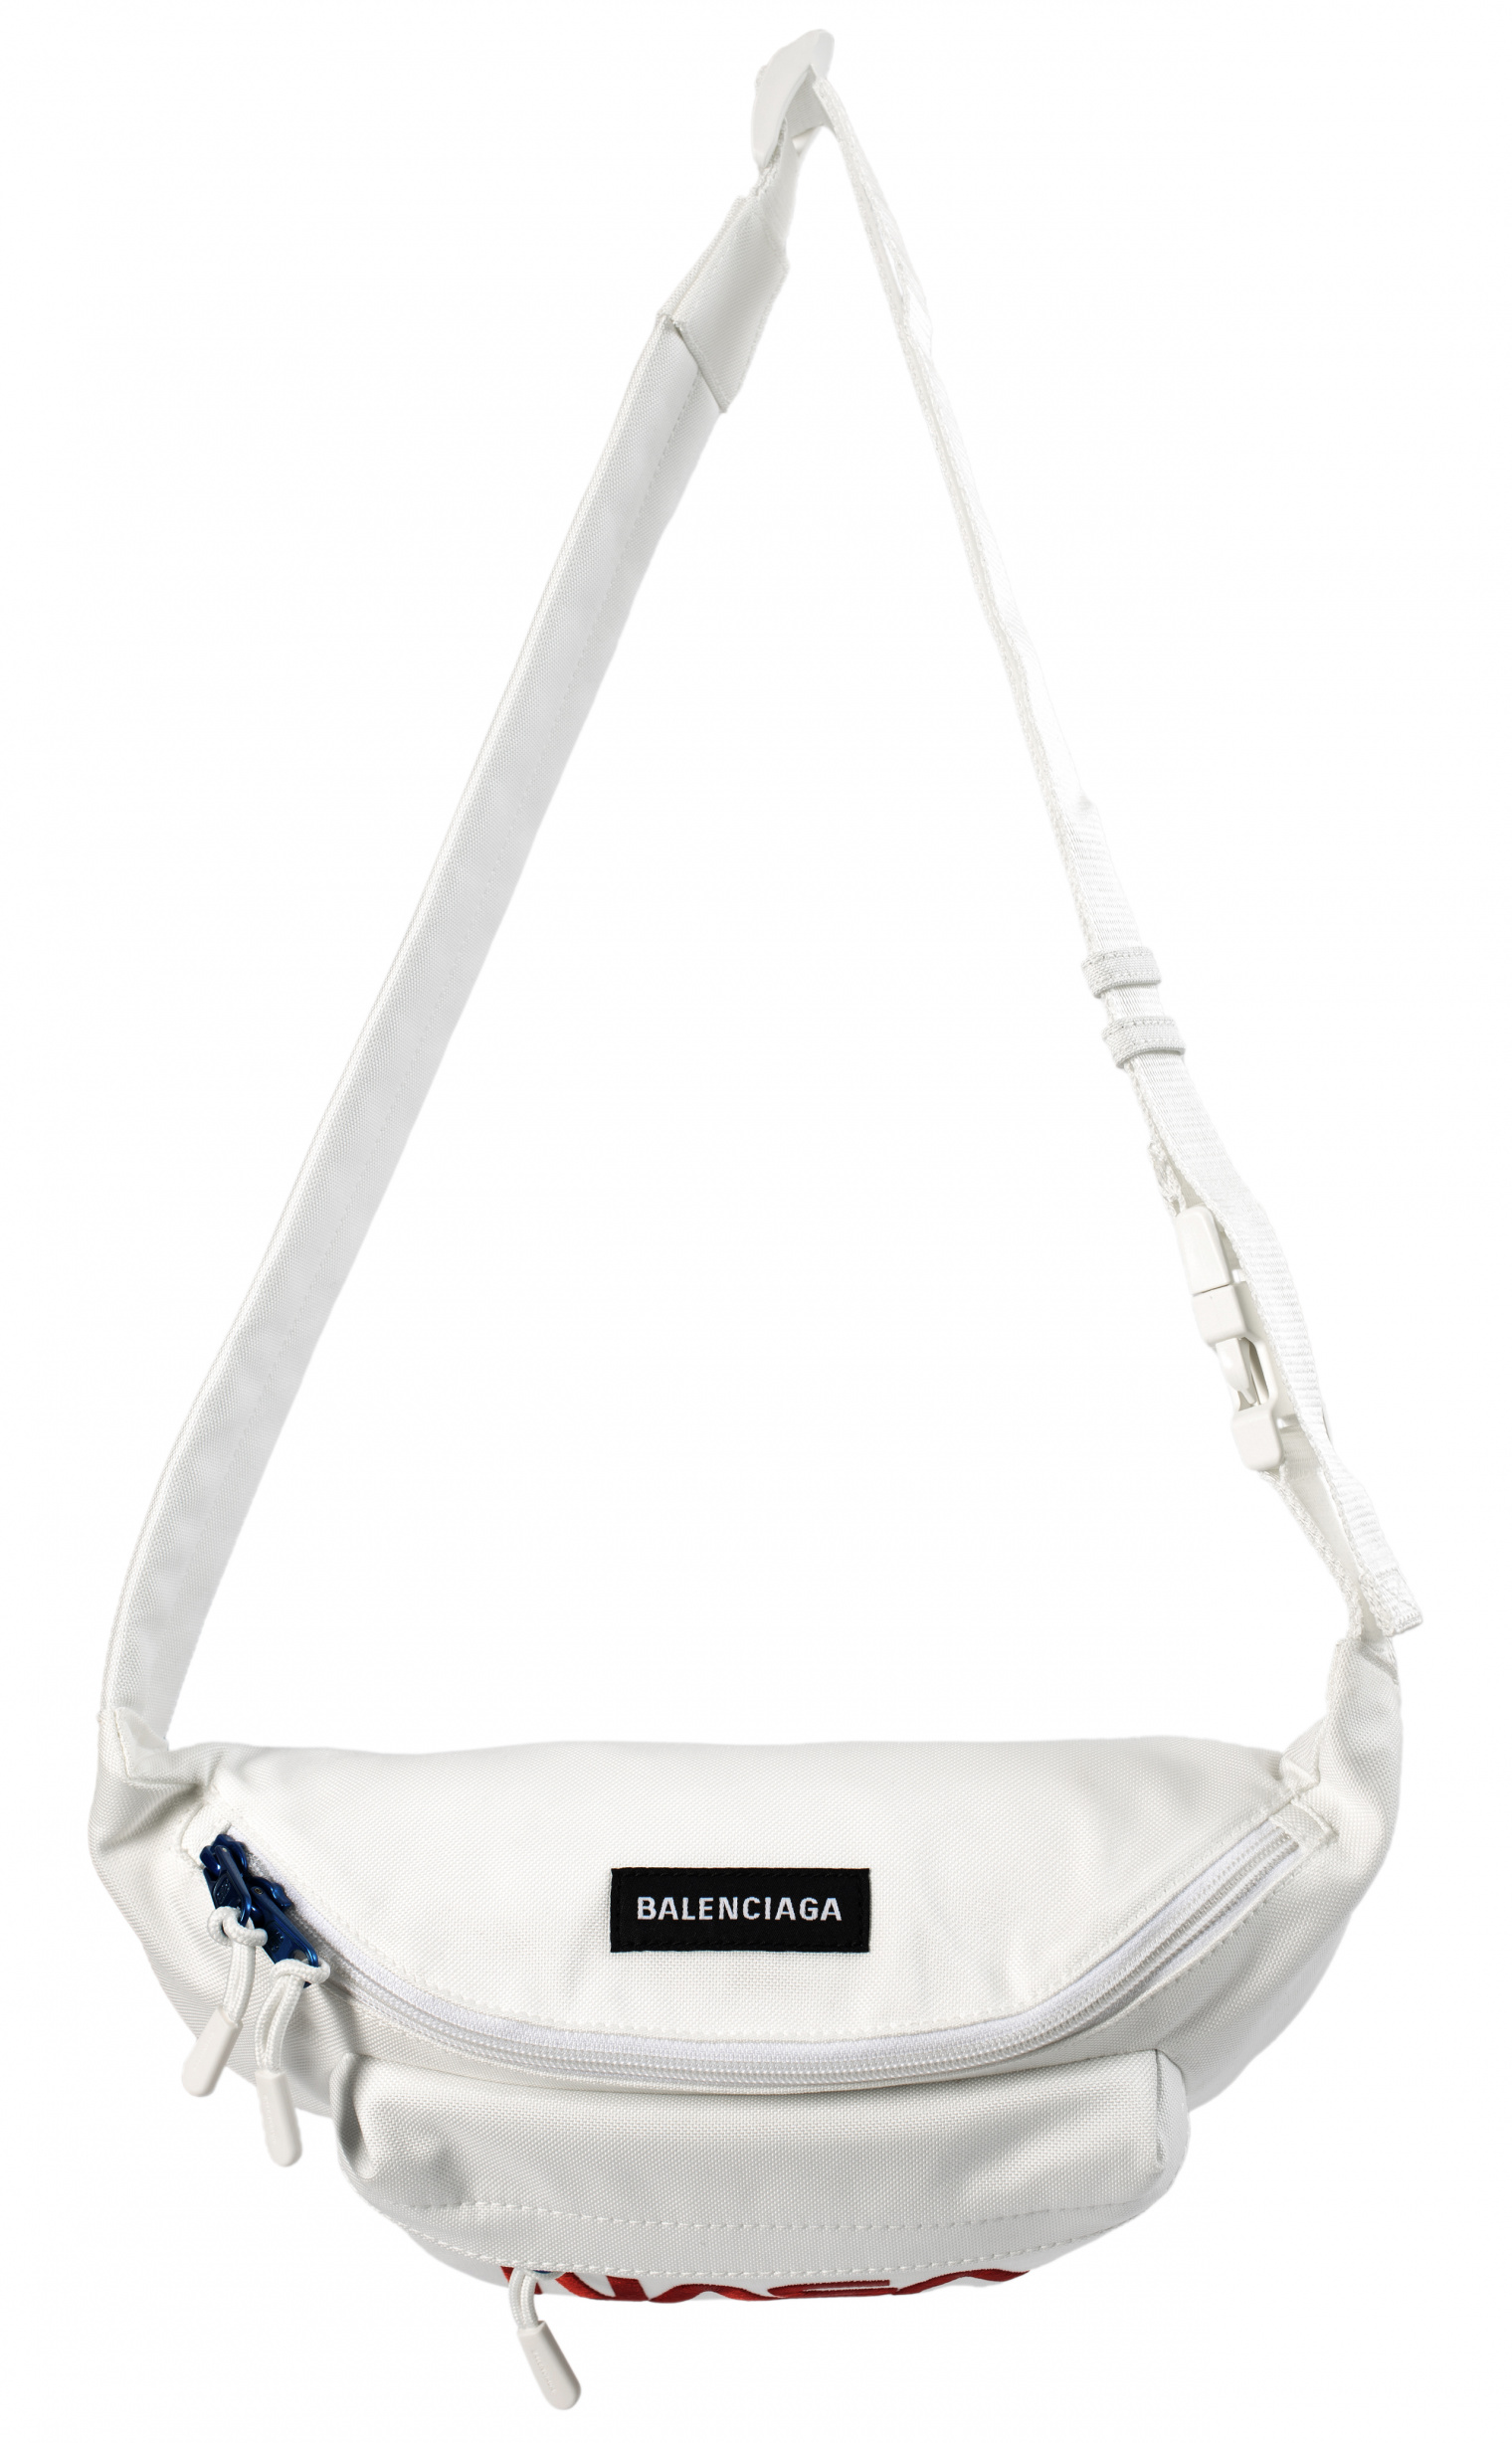 Balenciaga Поясная сумка с вышивкой NASA